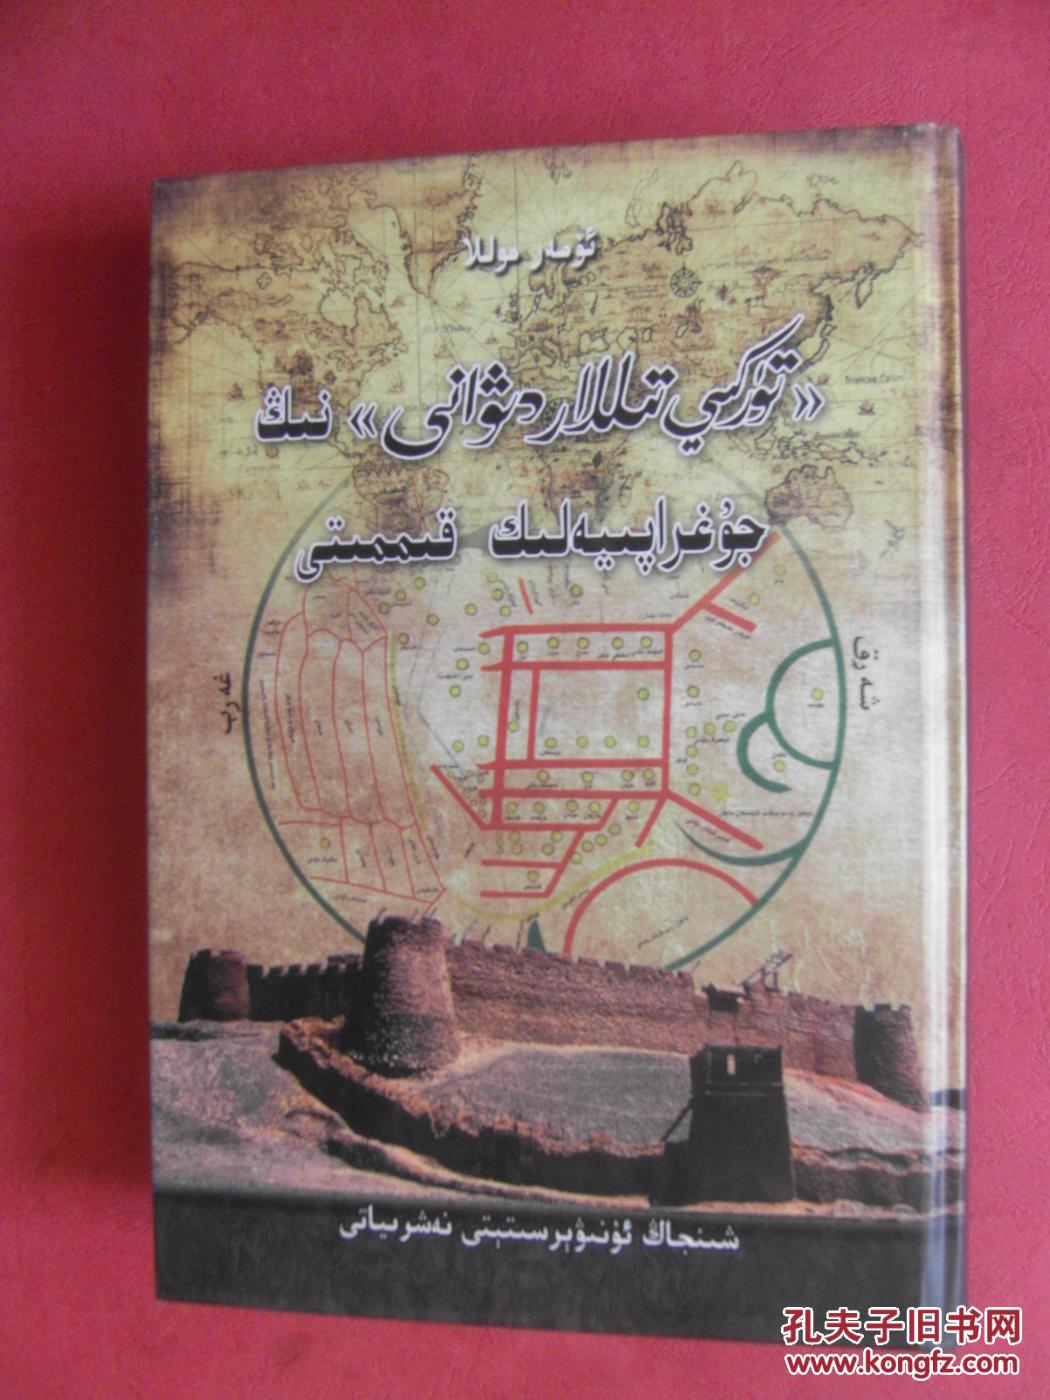 《突厥语大词典》在地理研究领域的重要学术价